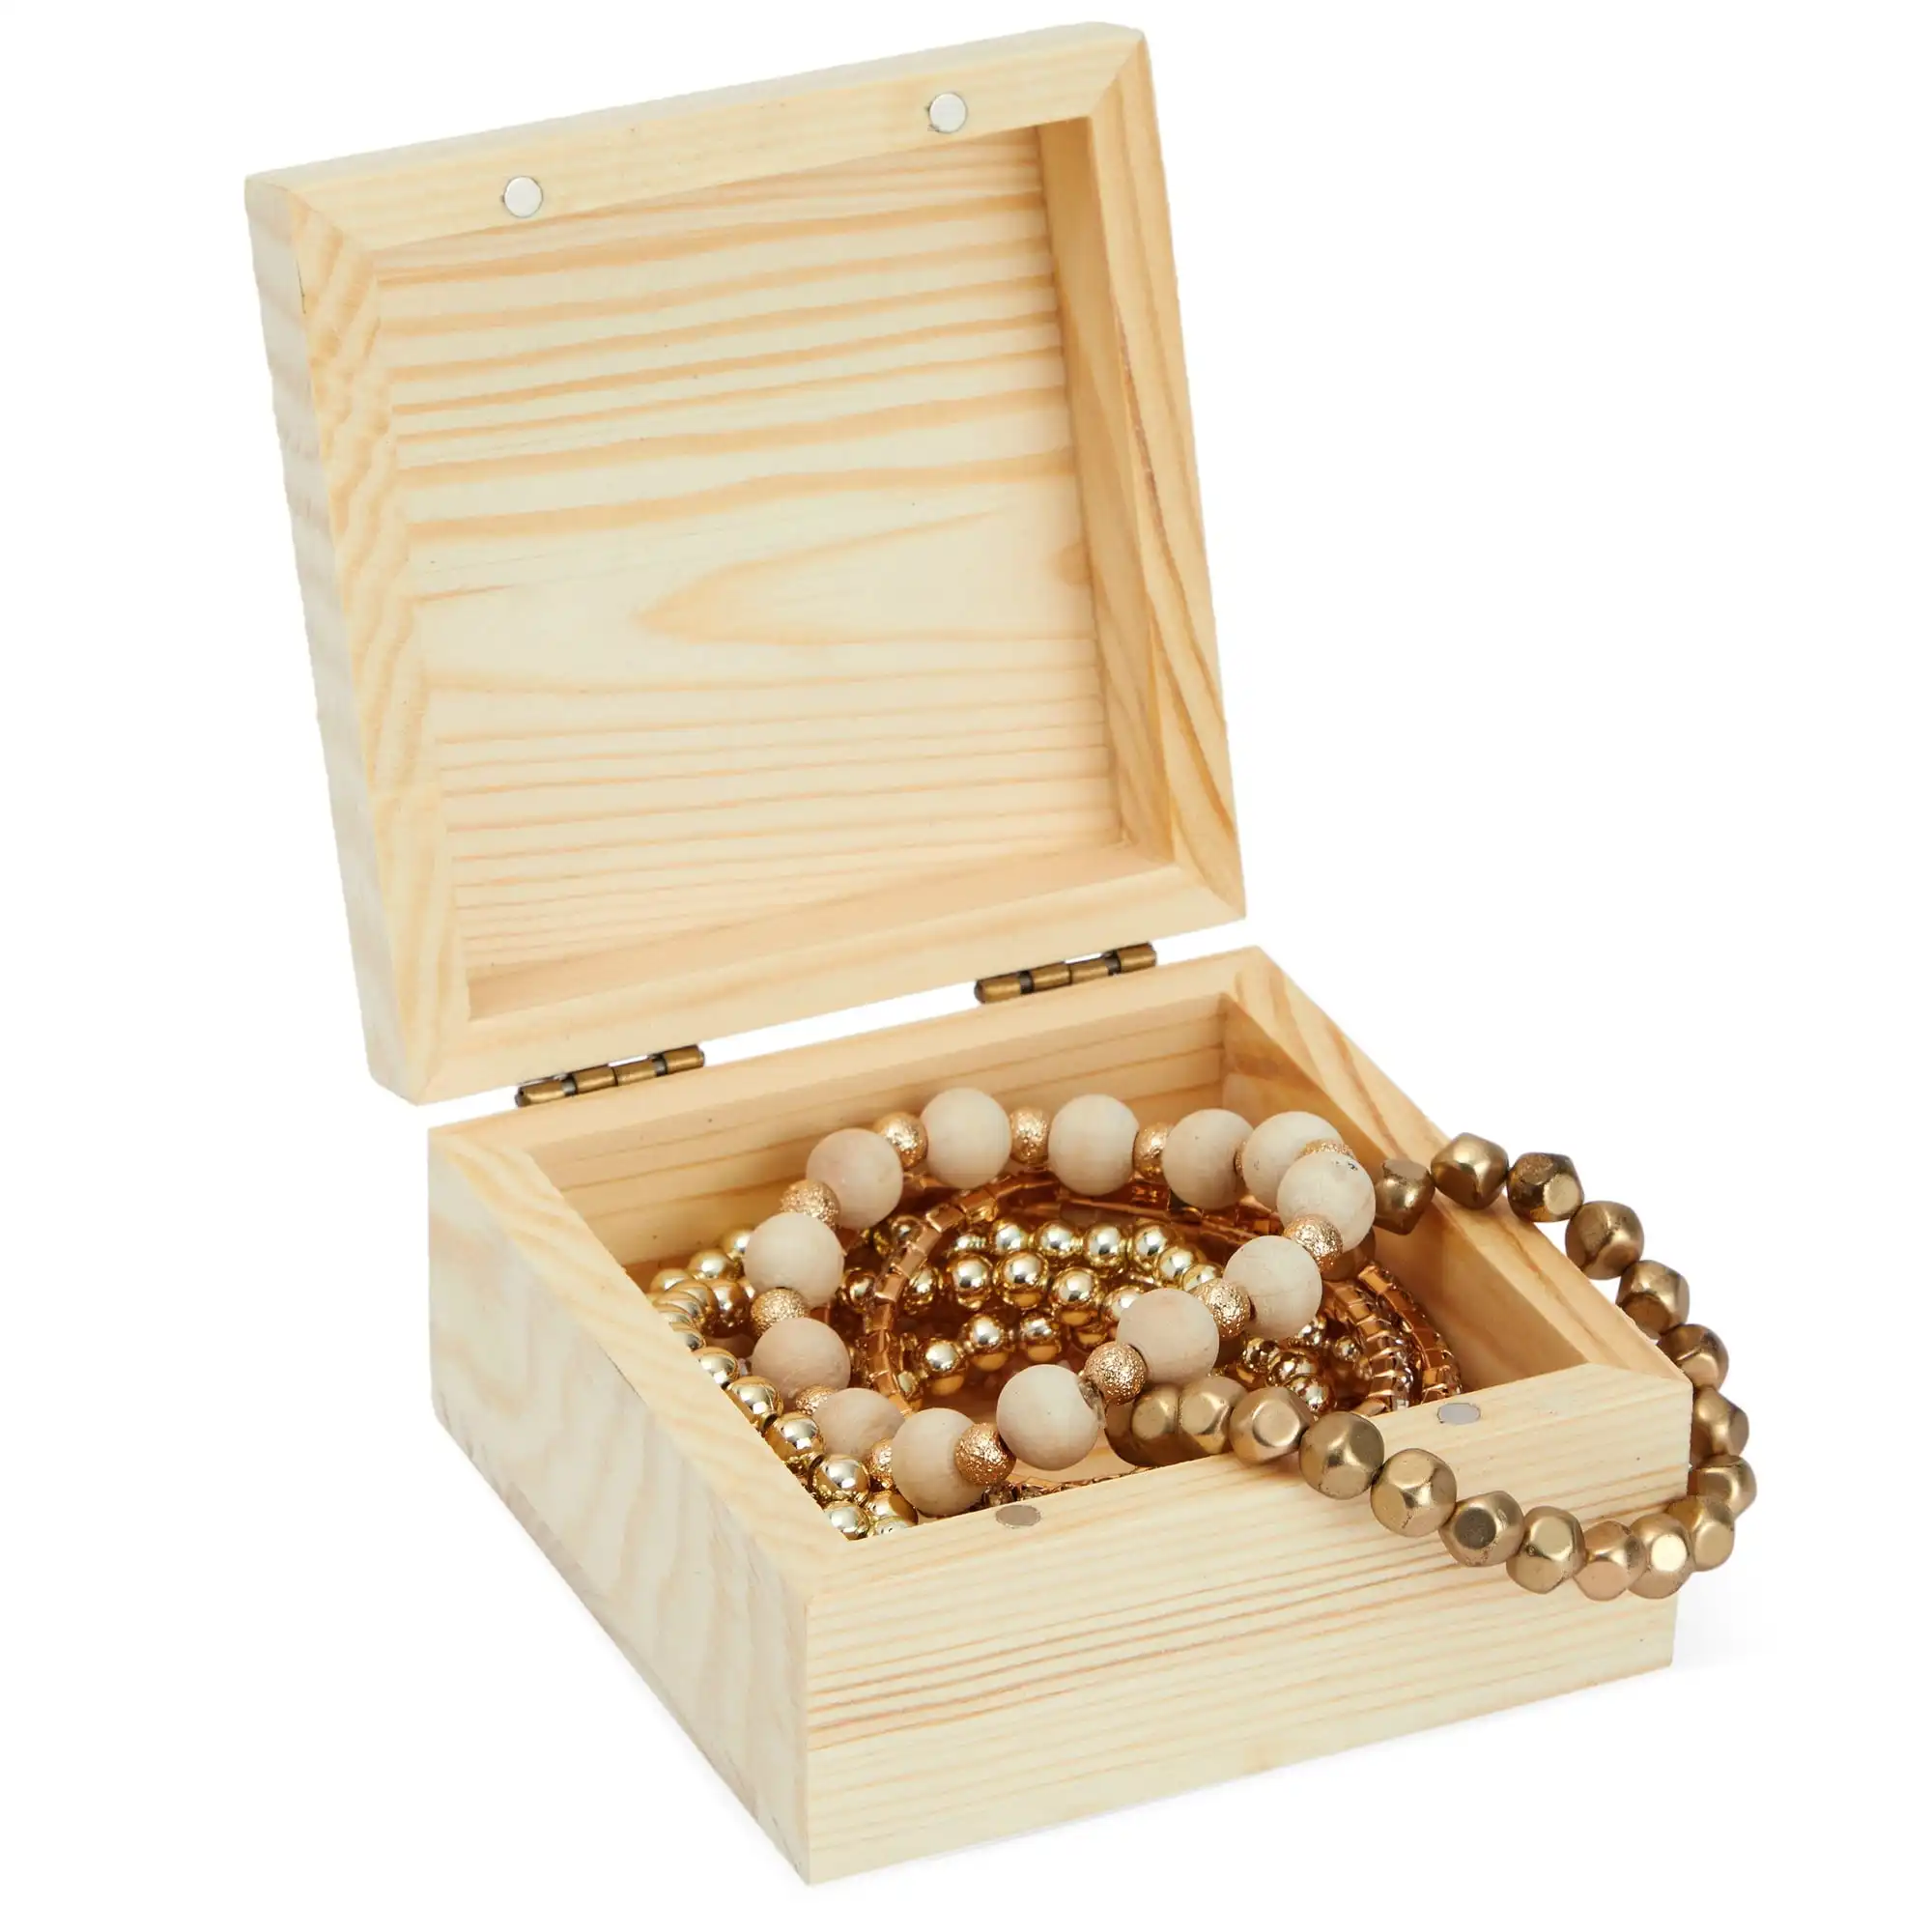 Vente en gros petite boîte cadeau en bois avec couvercles à charnière et serrure magnétique pour bijoux en bois massif chêne-pin inachevé